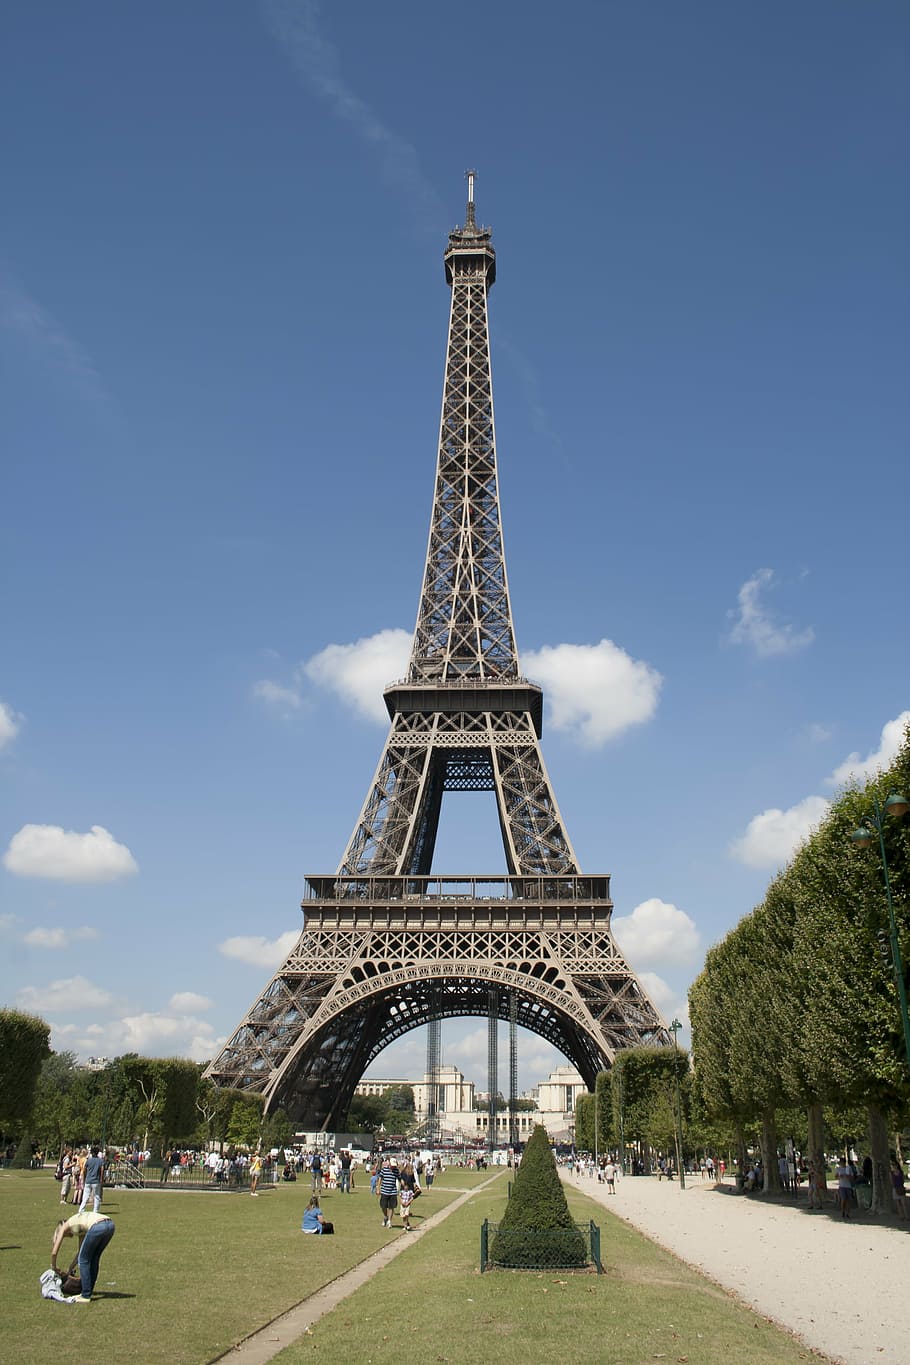 HD wallpaper: the eiffel tower, paris, garden, paris - France, famous ...